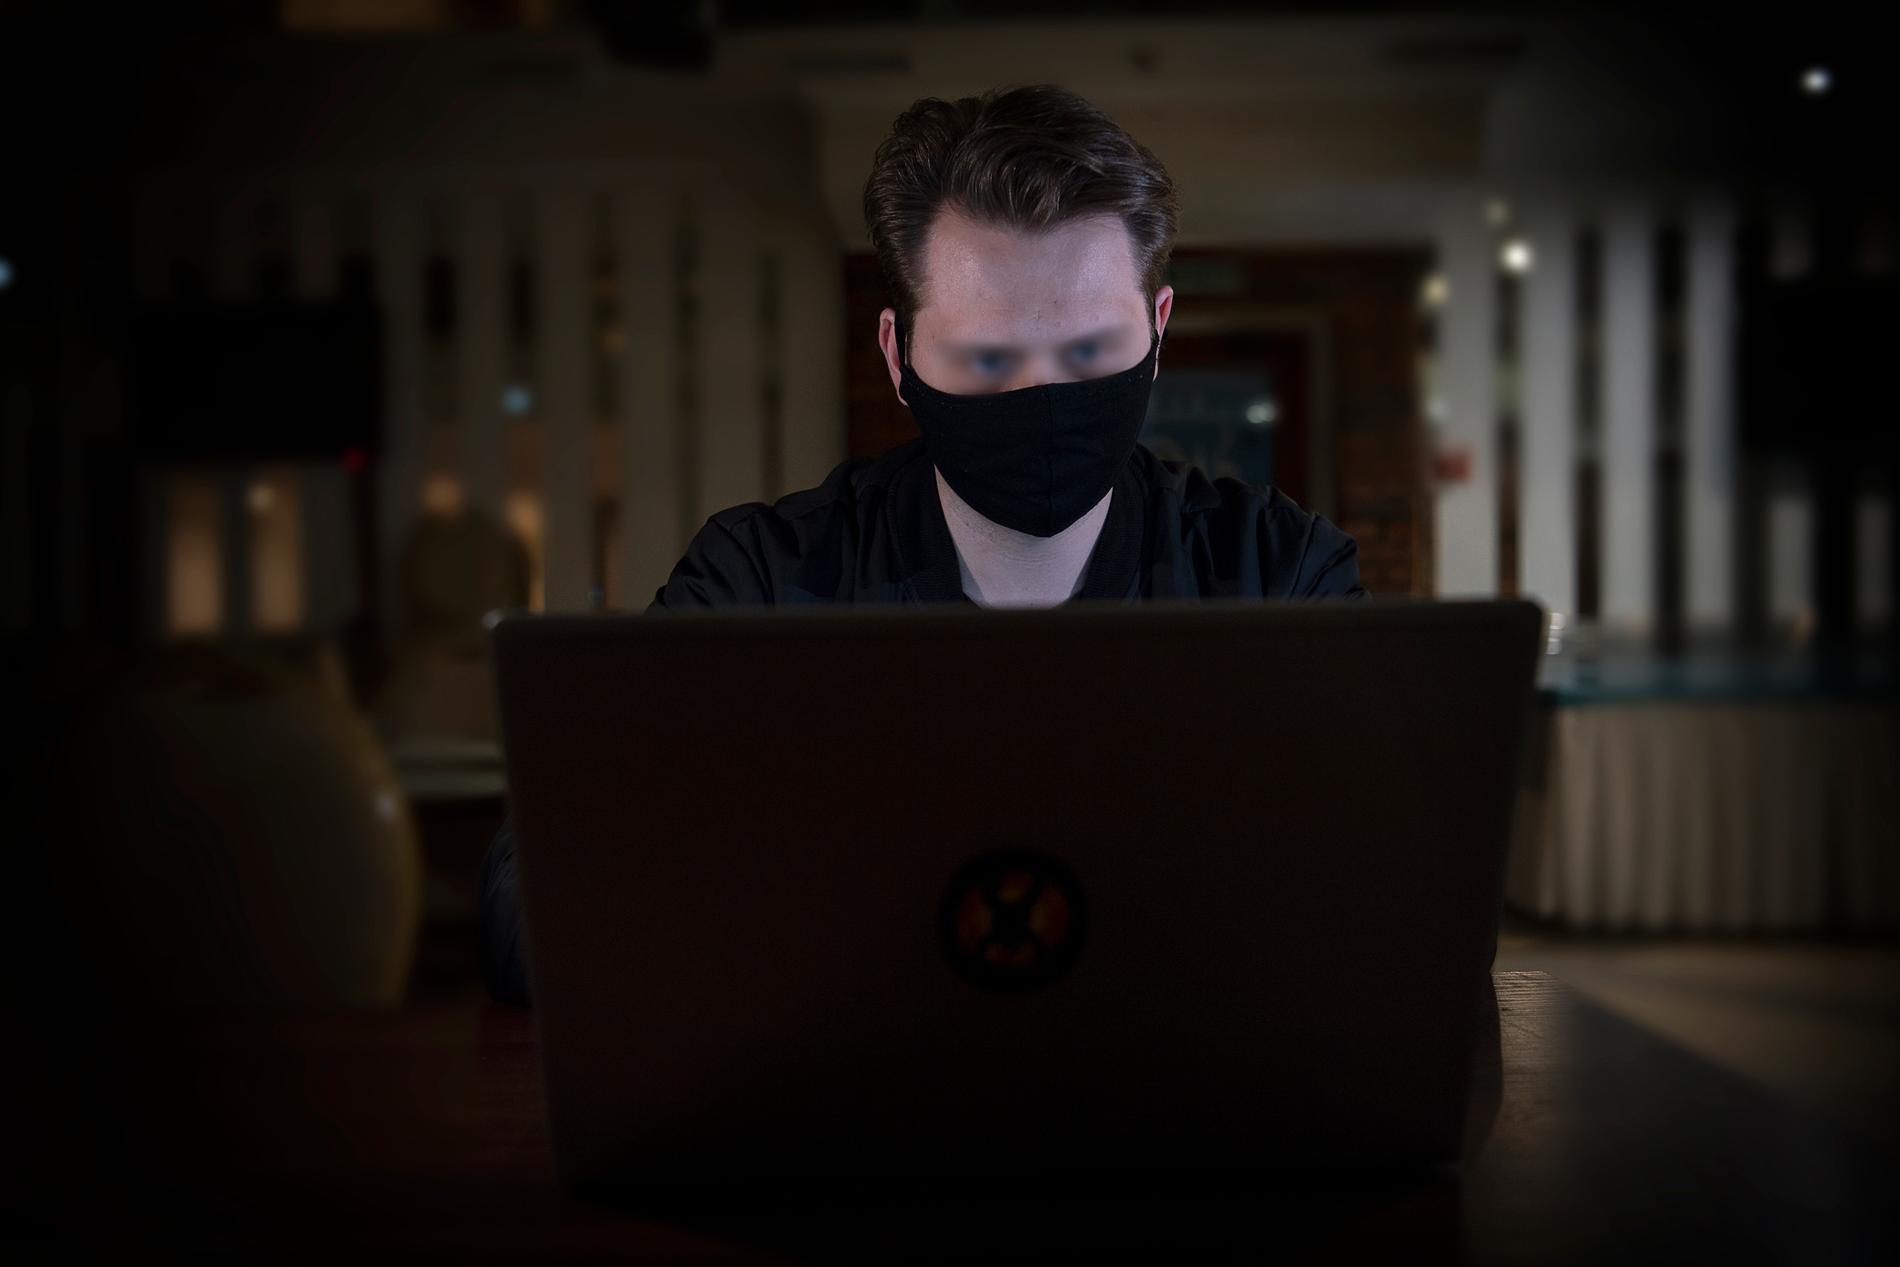  Alex, 25, vill vara anonym eftersom det är olagligt att genomföra hackerattacker. ”Men vi är i krig, då känns det inte lika olagligt som tidigare. Vi gör det med ett gott syfte, det tror jag omvärlden kan förstå”, säger han.